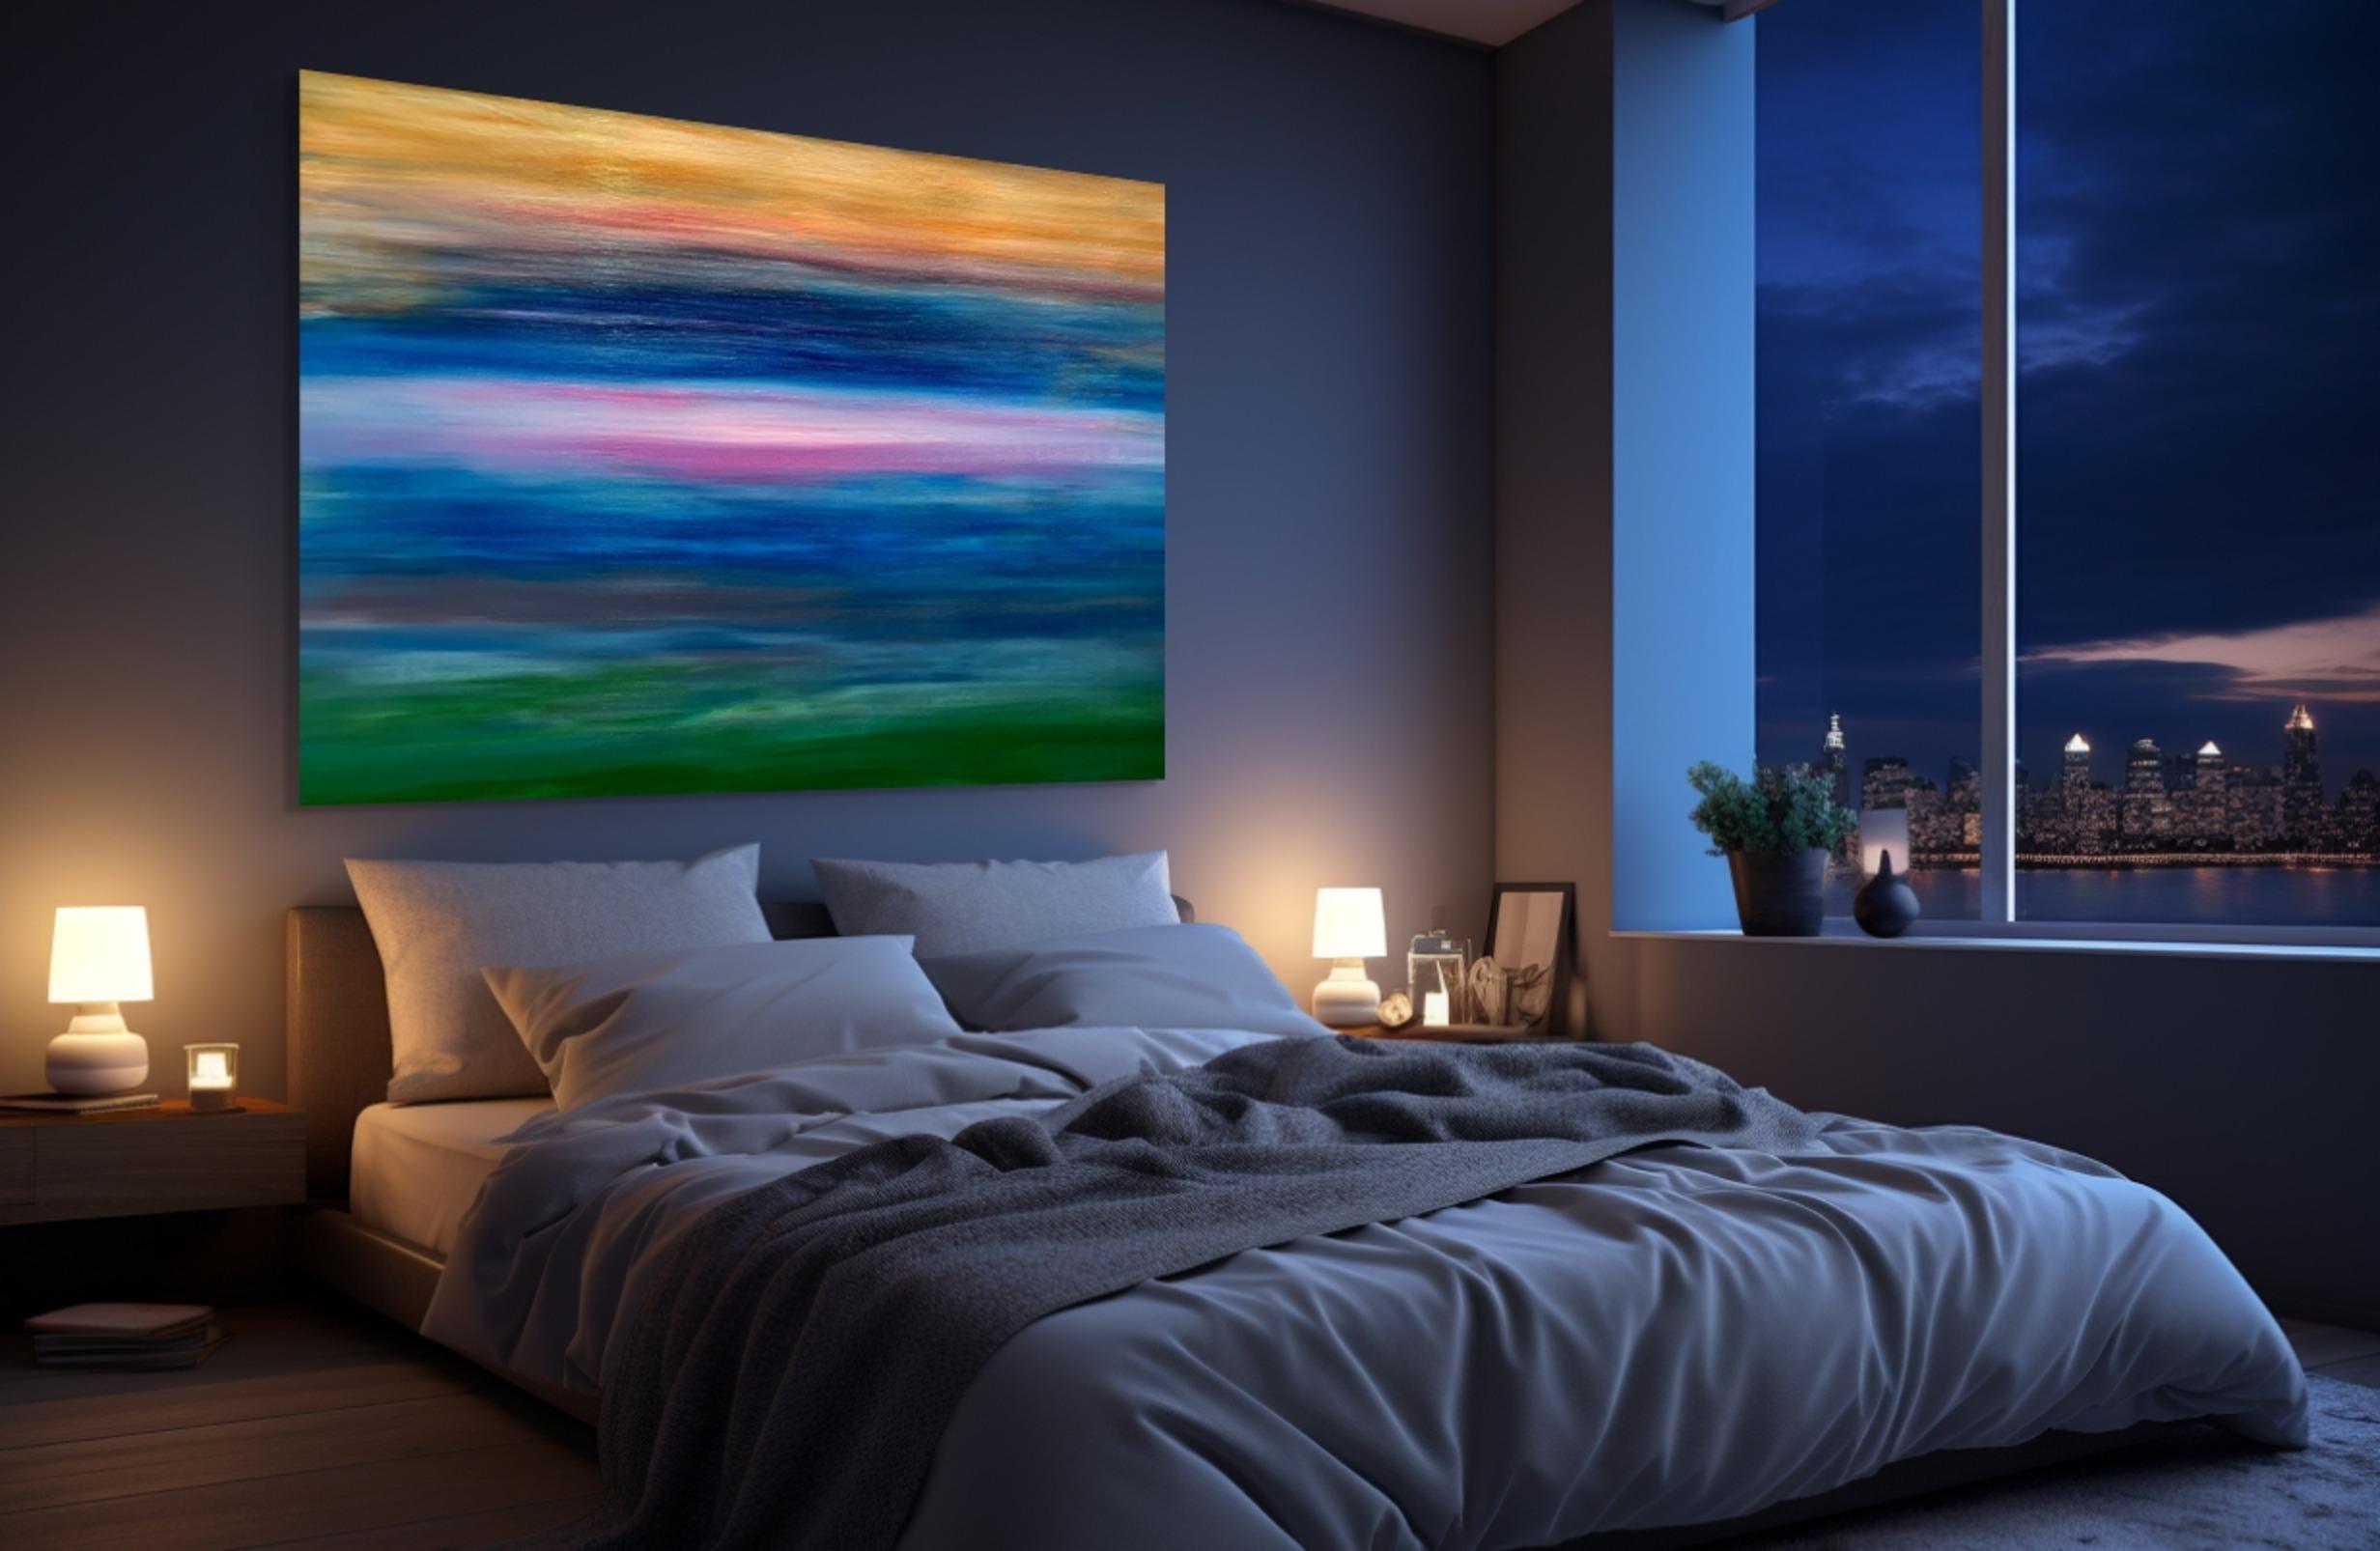 Horizon Light - Painting by Estelle Asmodelle